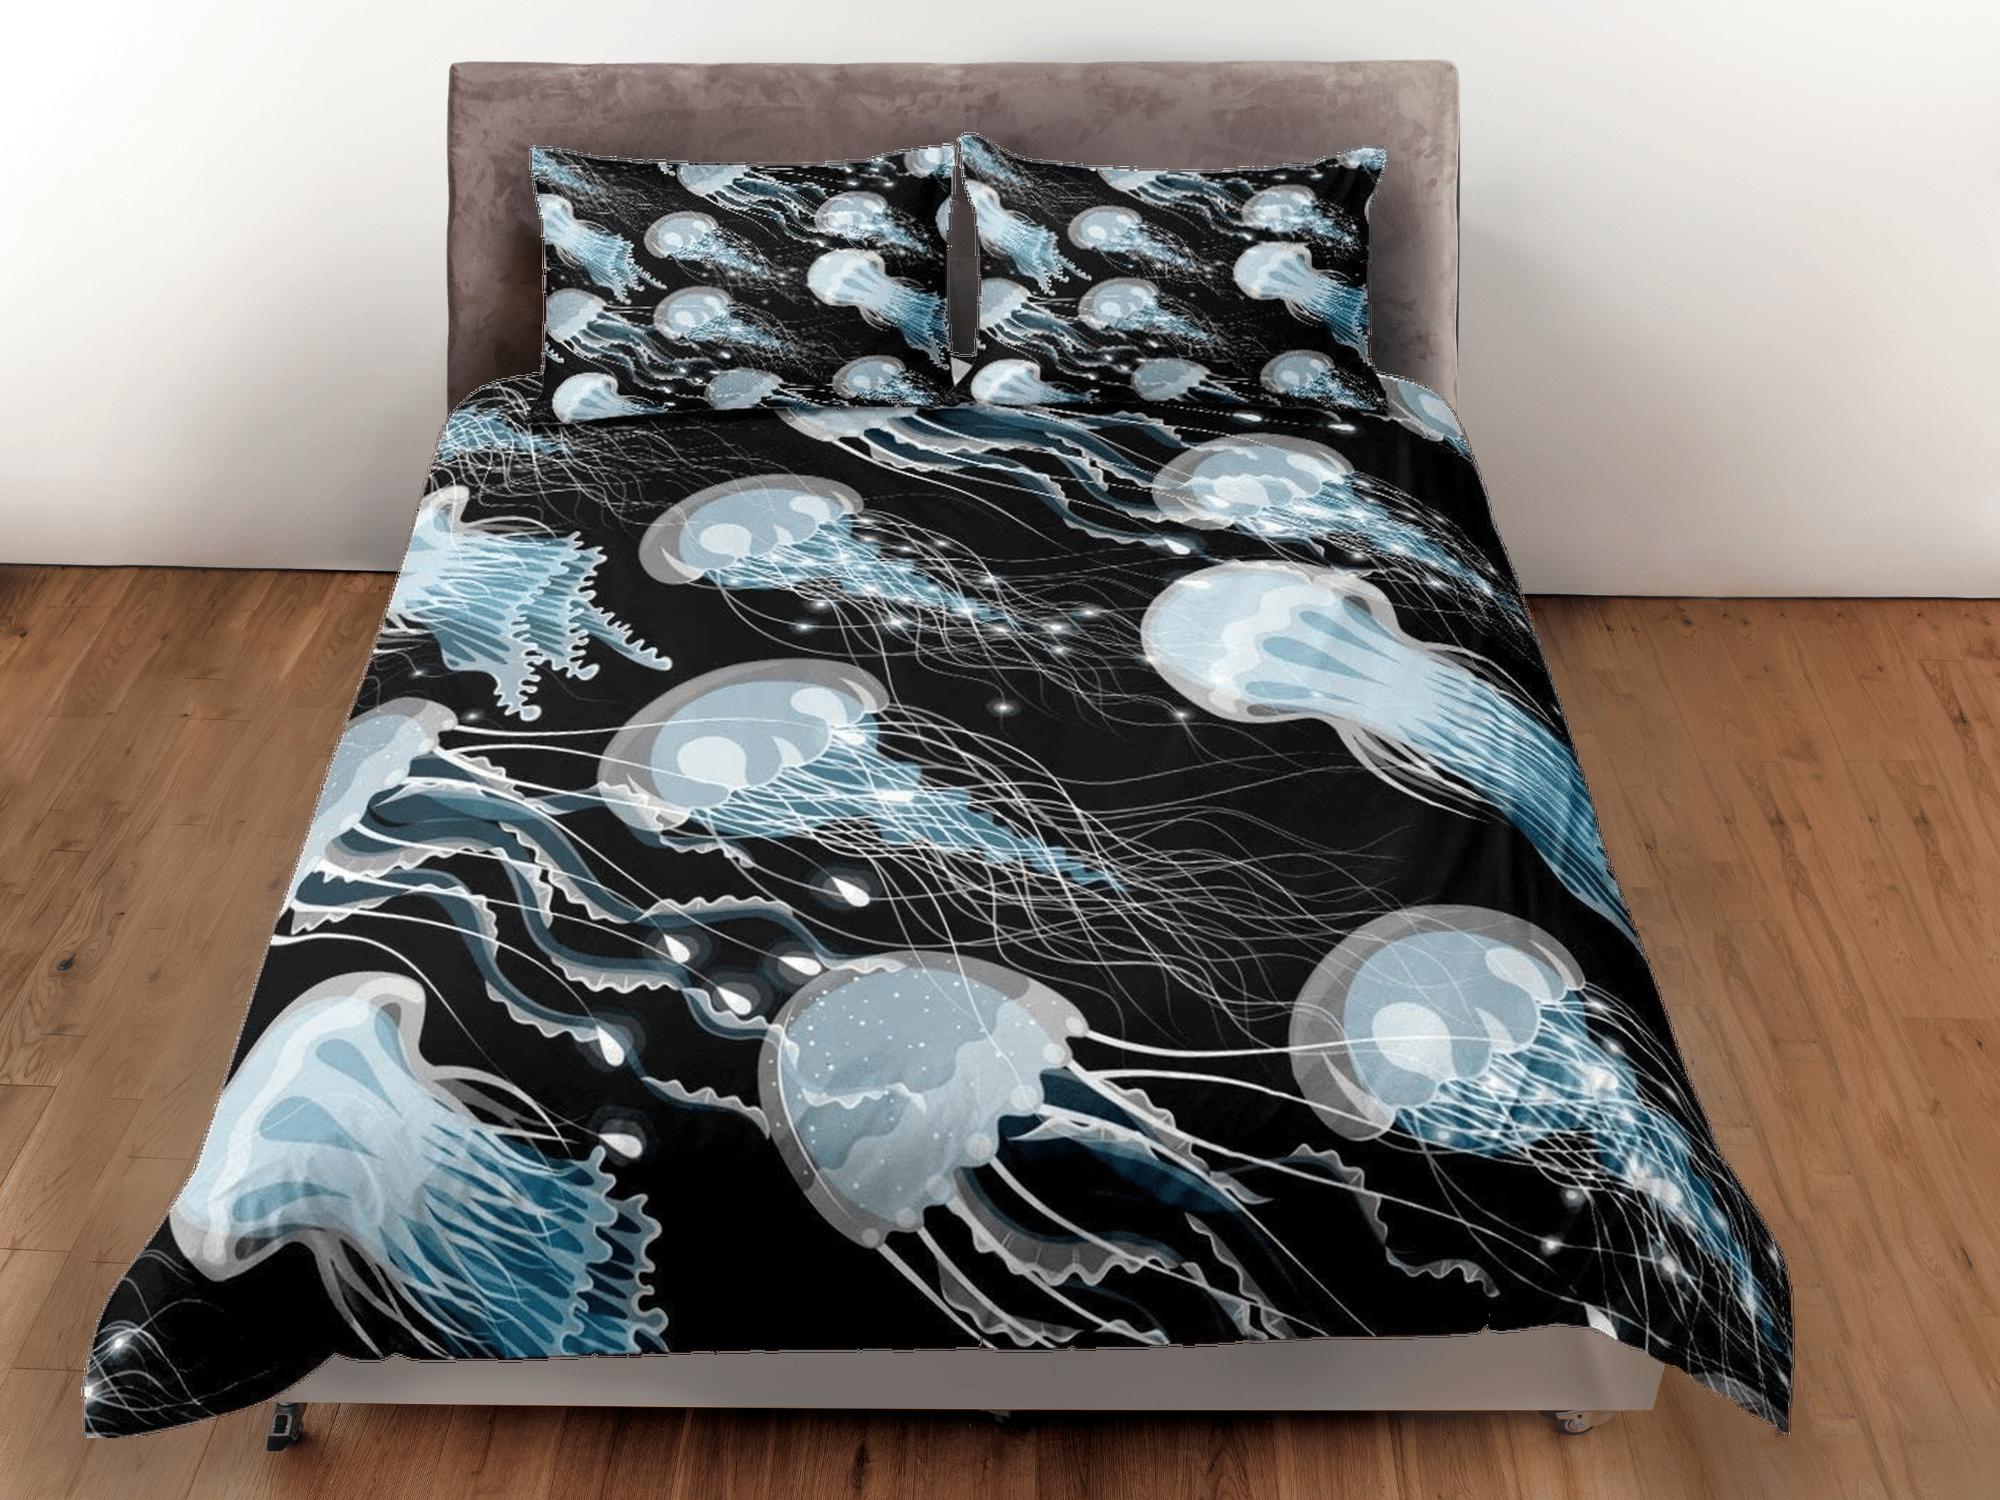 daintyduvet Blue jellyfish bedding black duvet cover, ocean blush sea animal bedding set full king queen twin crib toddler, college dorm bedding gift